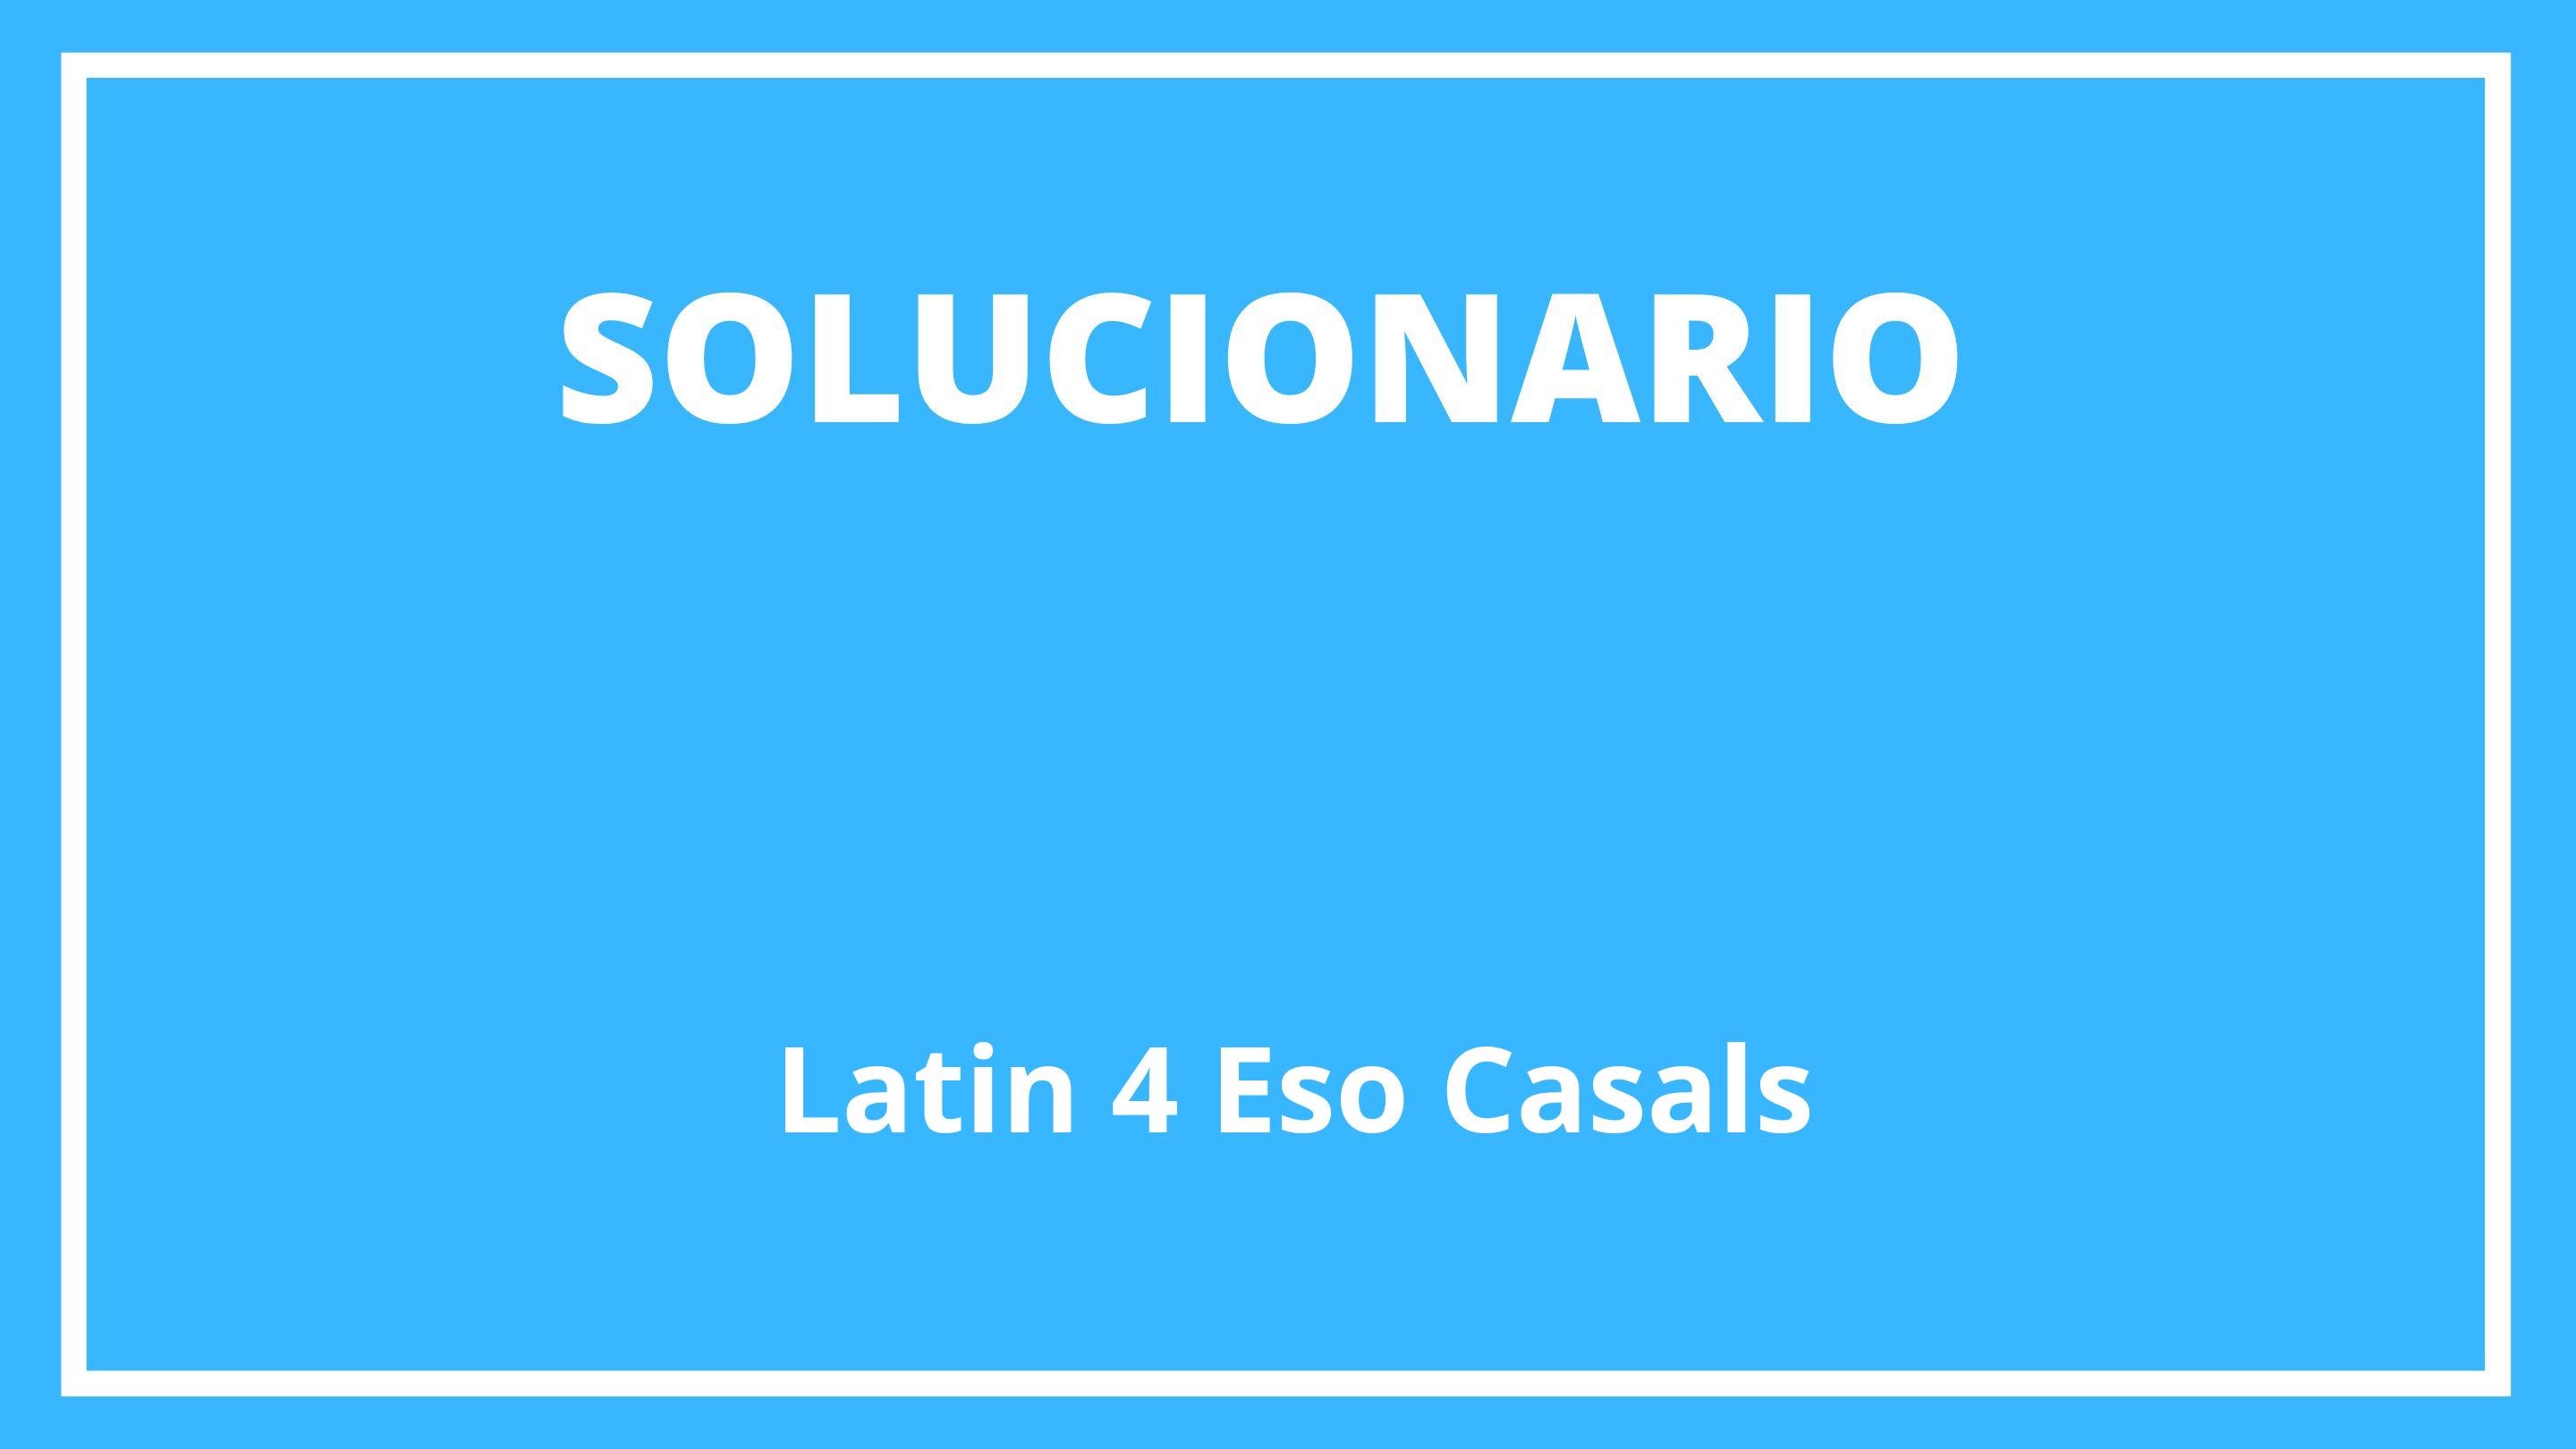 Solucionario Latin 4 Eso Casals